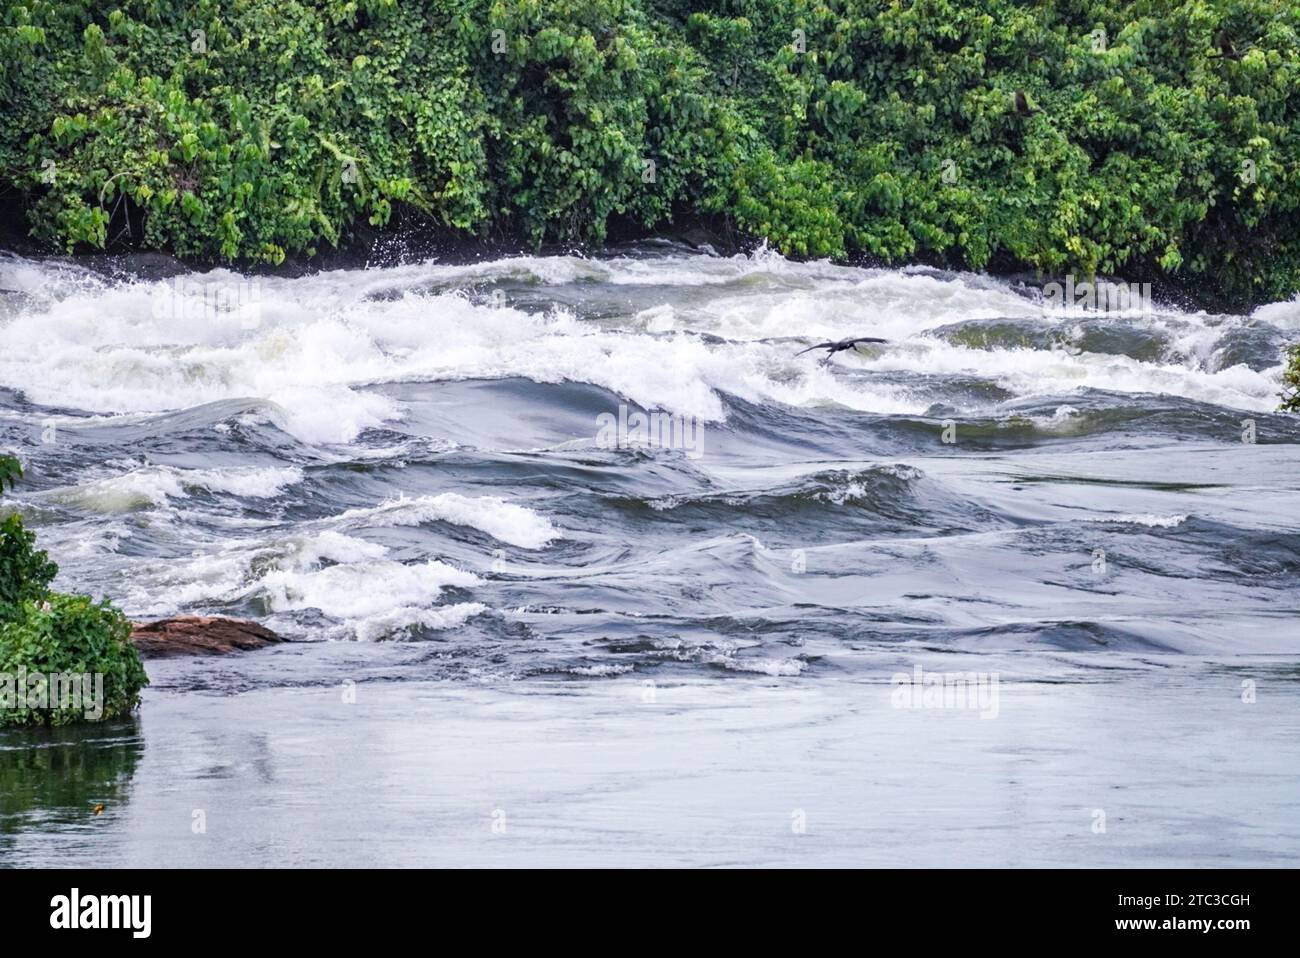 Rapides d'eau vive du Nil - Ouganda, Afrique Banque D'Images